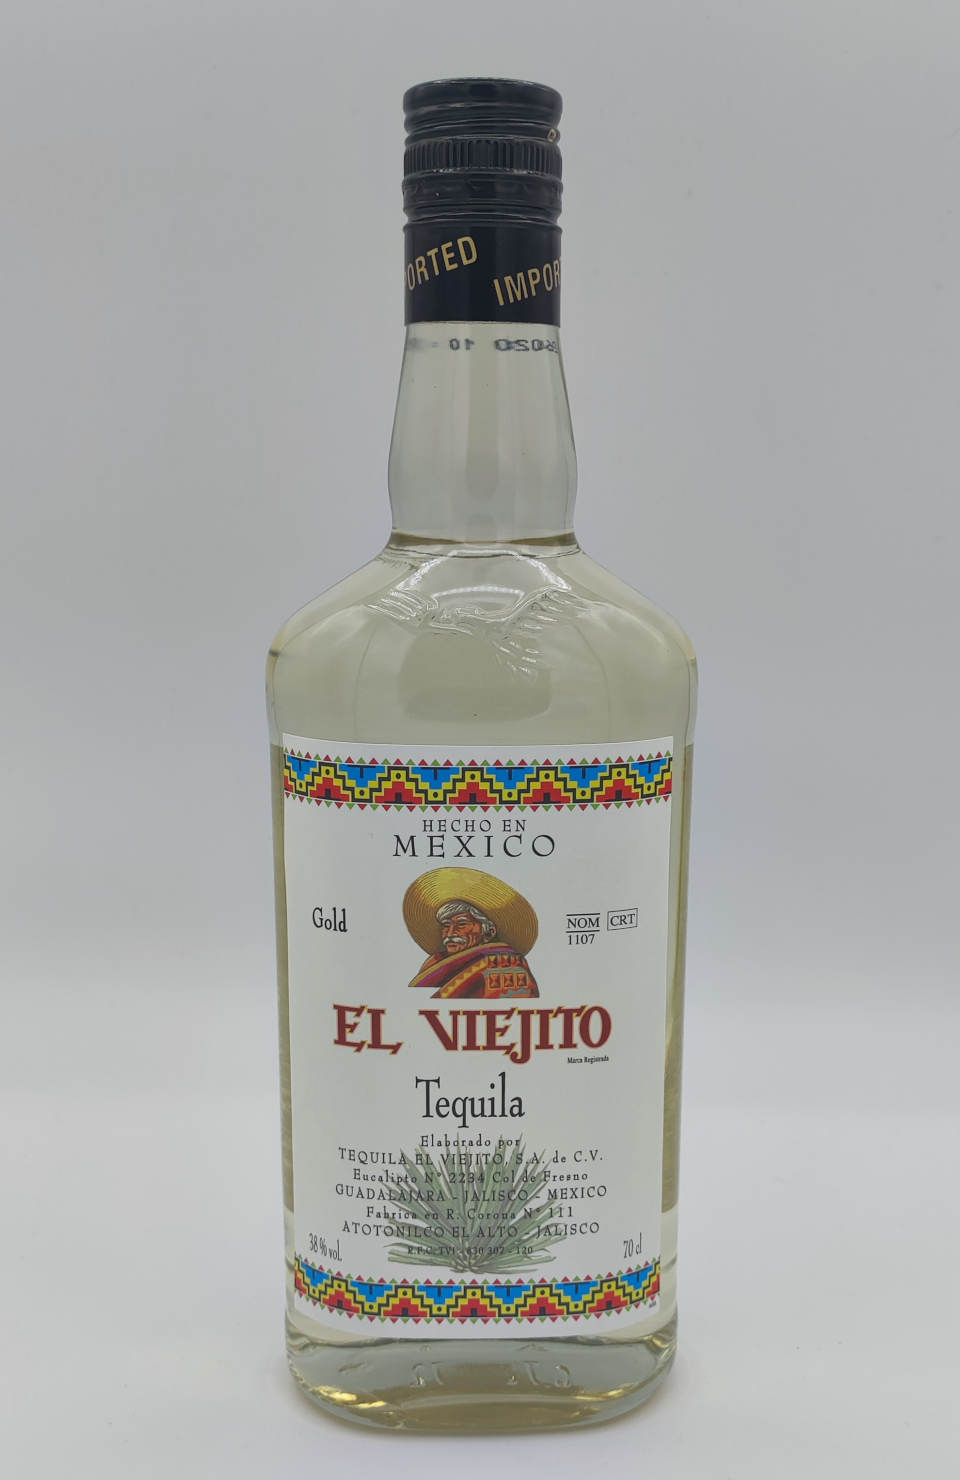 Tequila El Viejito